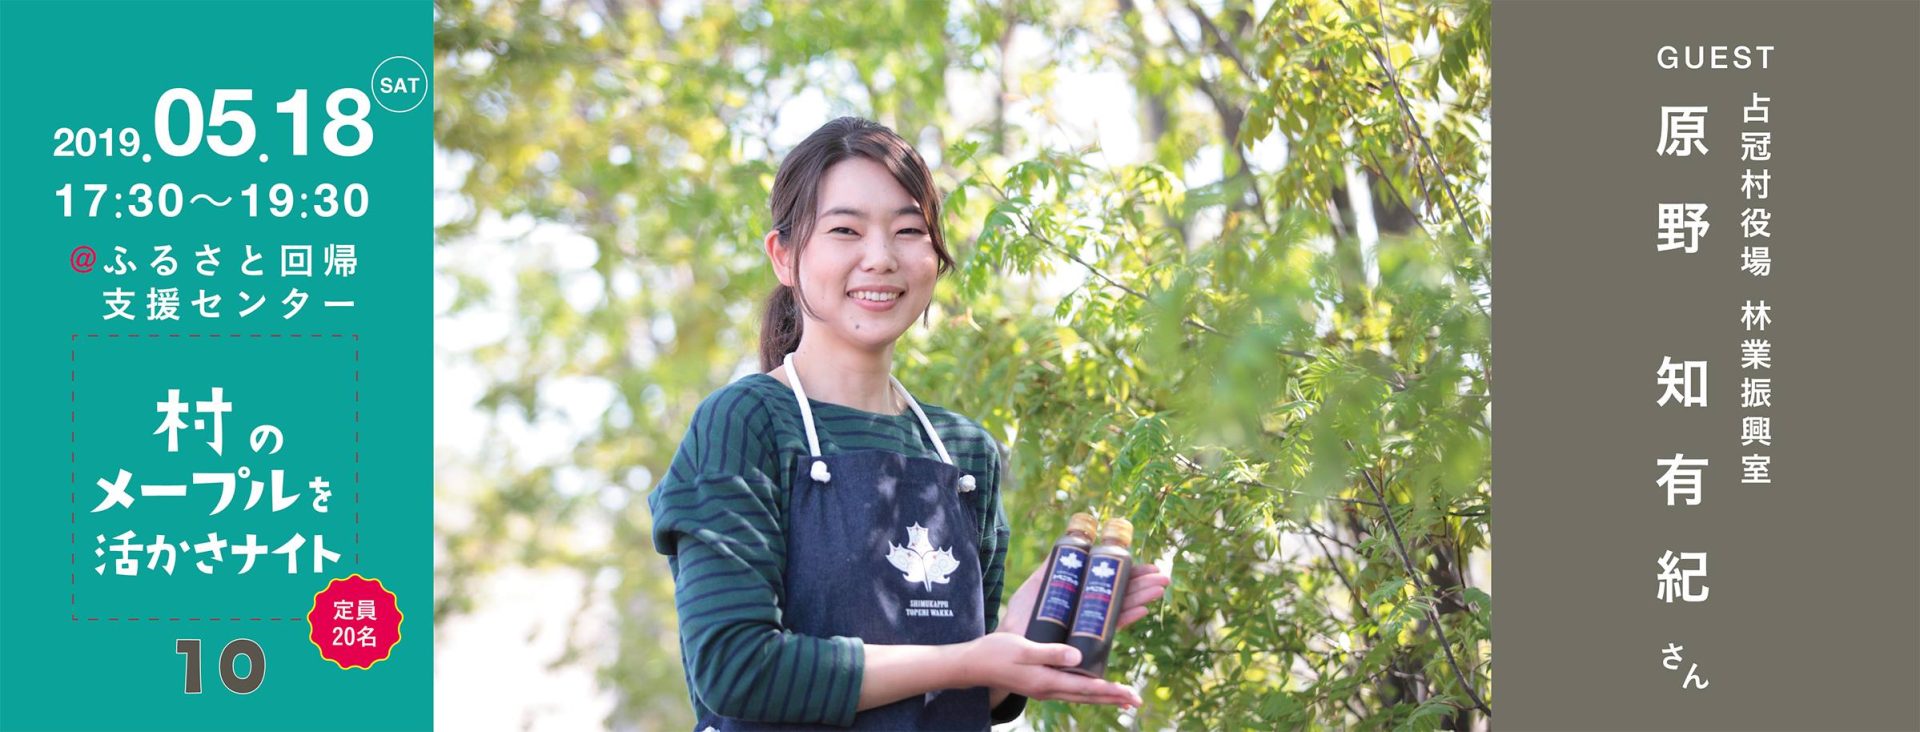 【満員御礼】北海道とつながるカフェ第10回「村のメープルを活かさナイト」 | 移住関連イベント情報